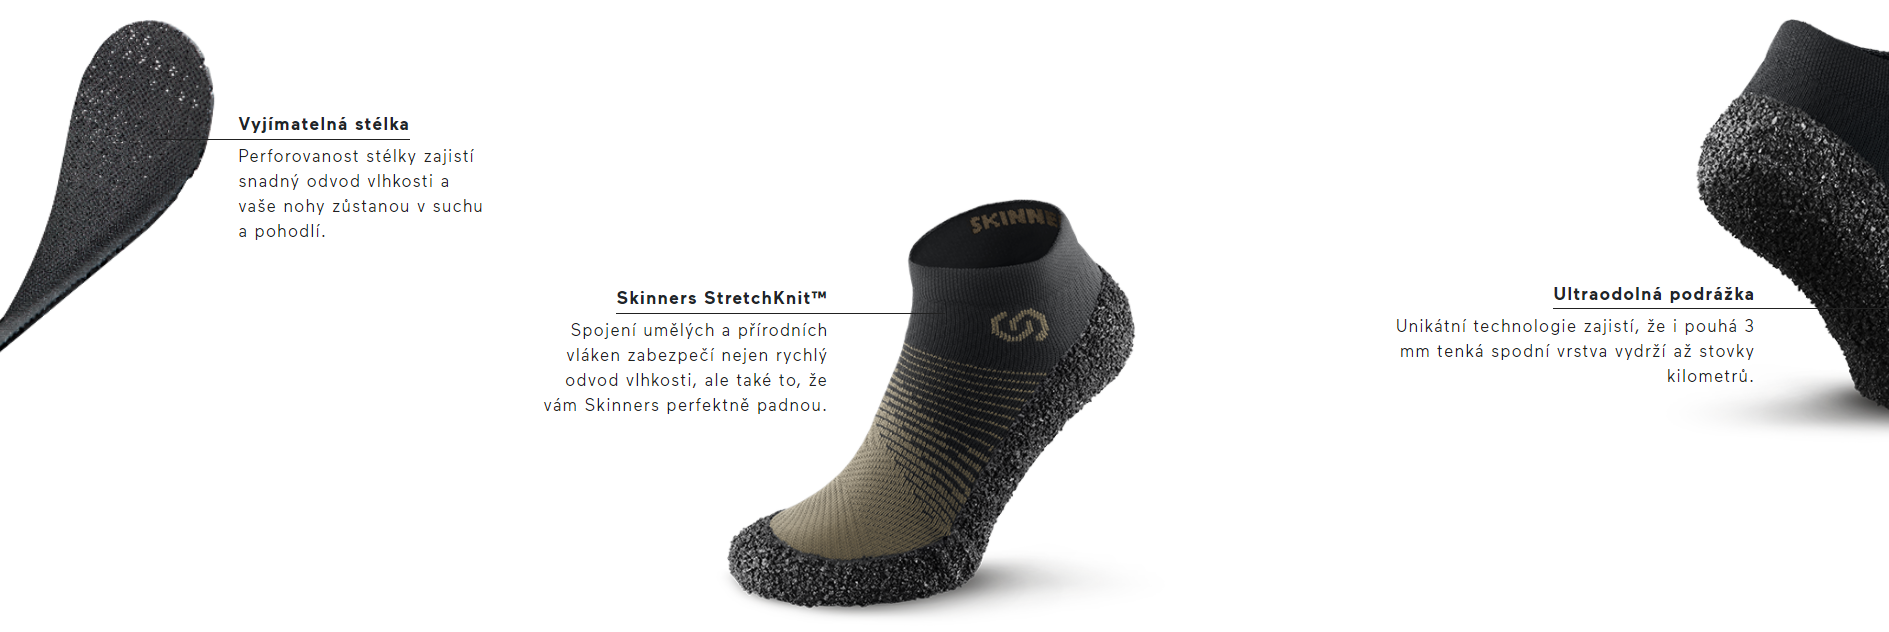 skinners-2-0-barefoot-ponozkoboty--vyrobeno-v-cr-2 (1)